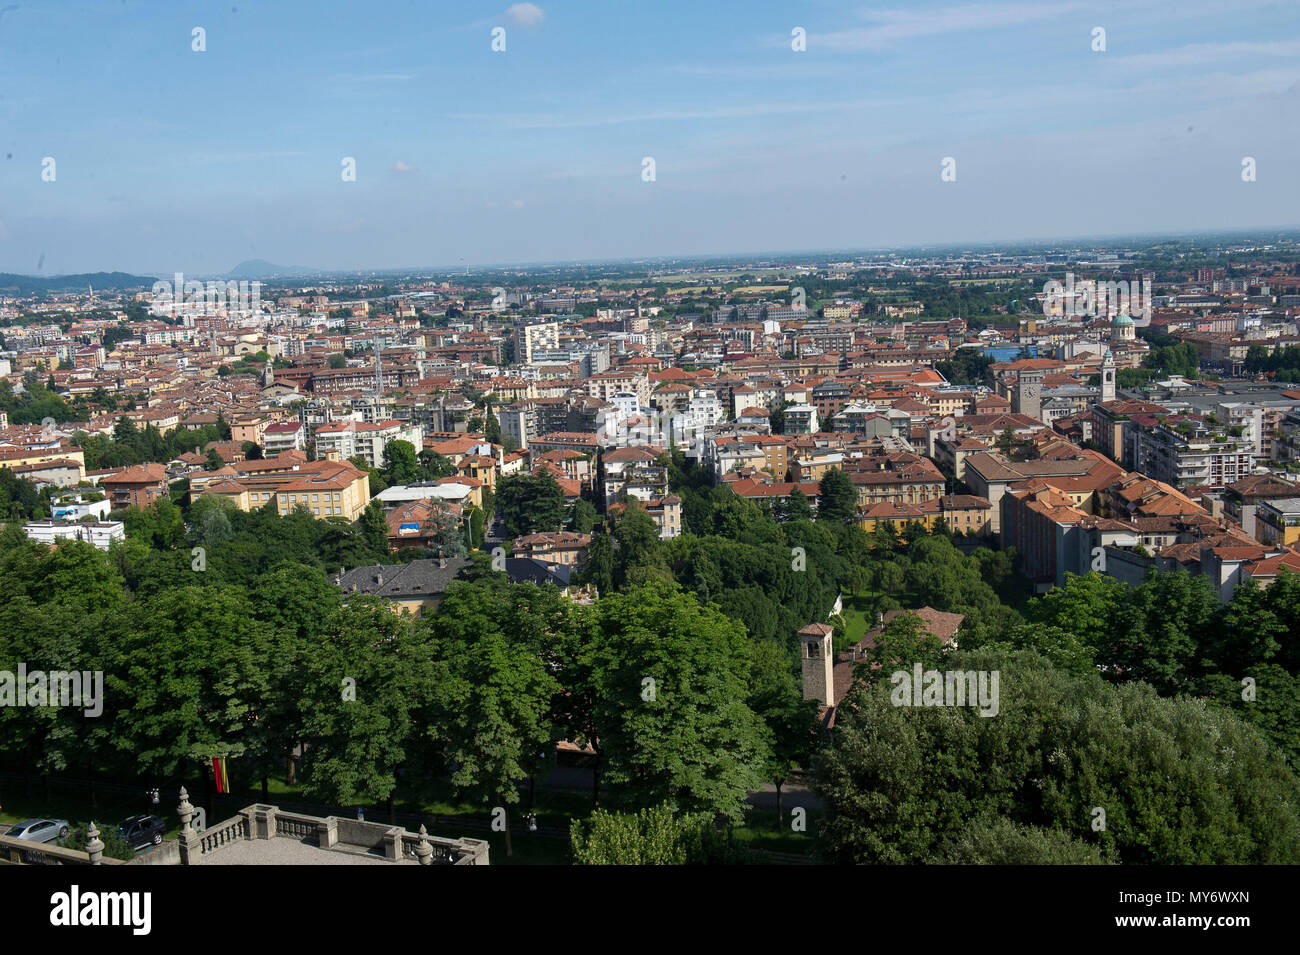 Europa, Italia, Lombardía, Bérgamo. Parte superior de la ciudad es una ciudad medieval de gran interés turístico y cultural. Panorama de la ciudad baja. Foto de stock